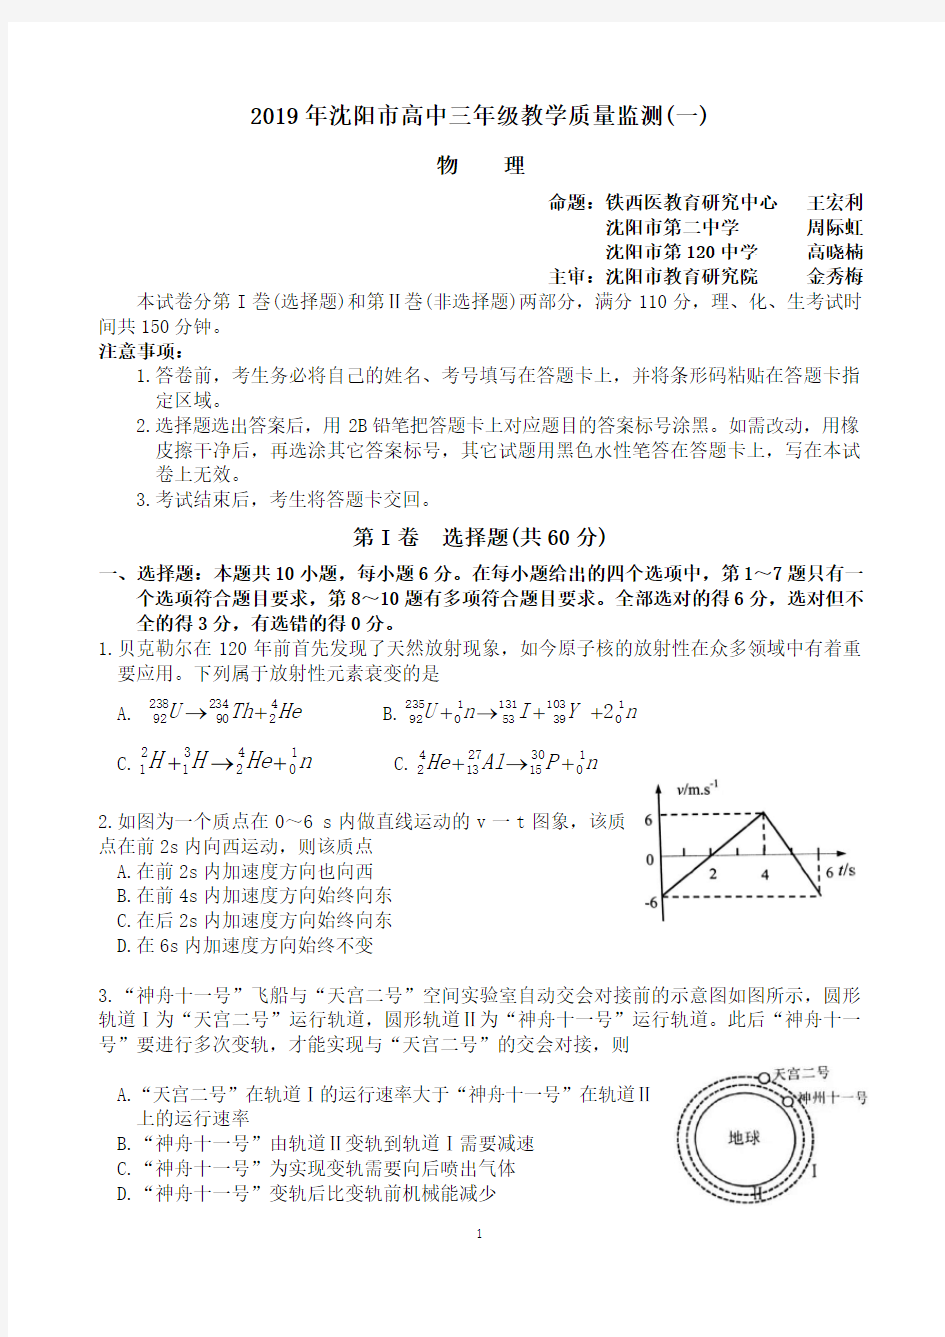 2019年沈阳市高中三年级教学质量监测物理试卷及答案